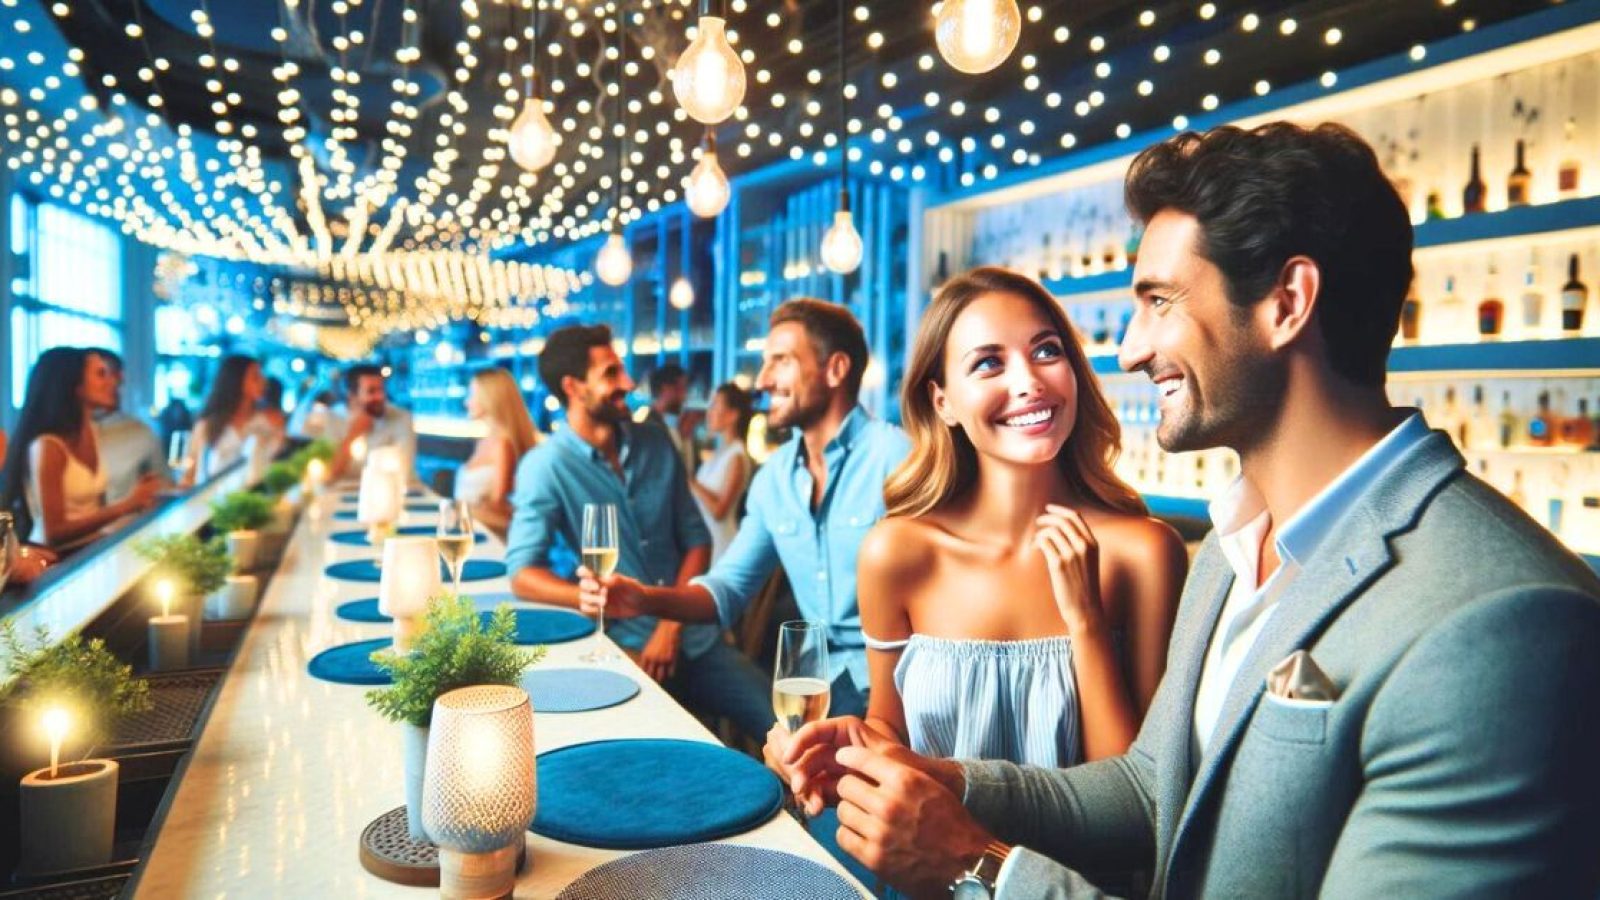 singles flirting at a speed dating night at a bar